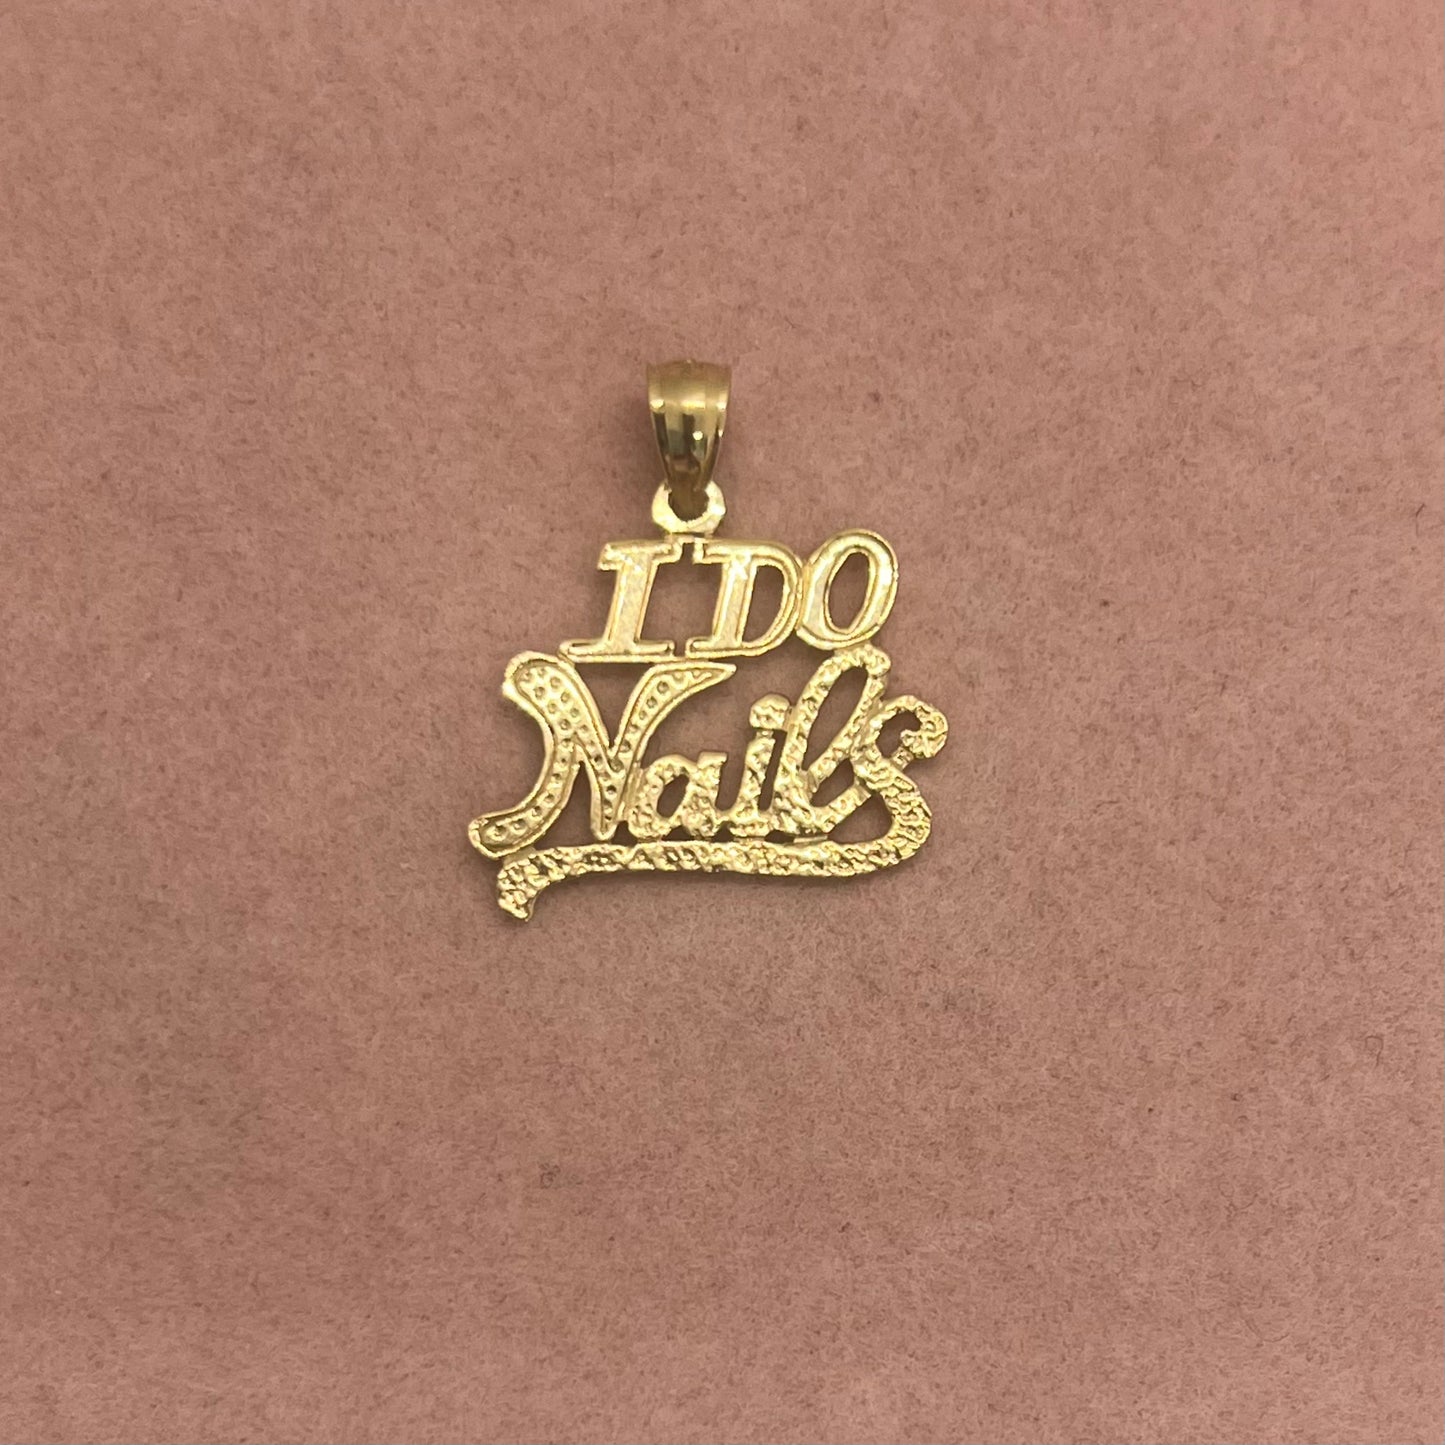 'I Do Nails' Charm (Option 2)